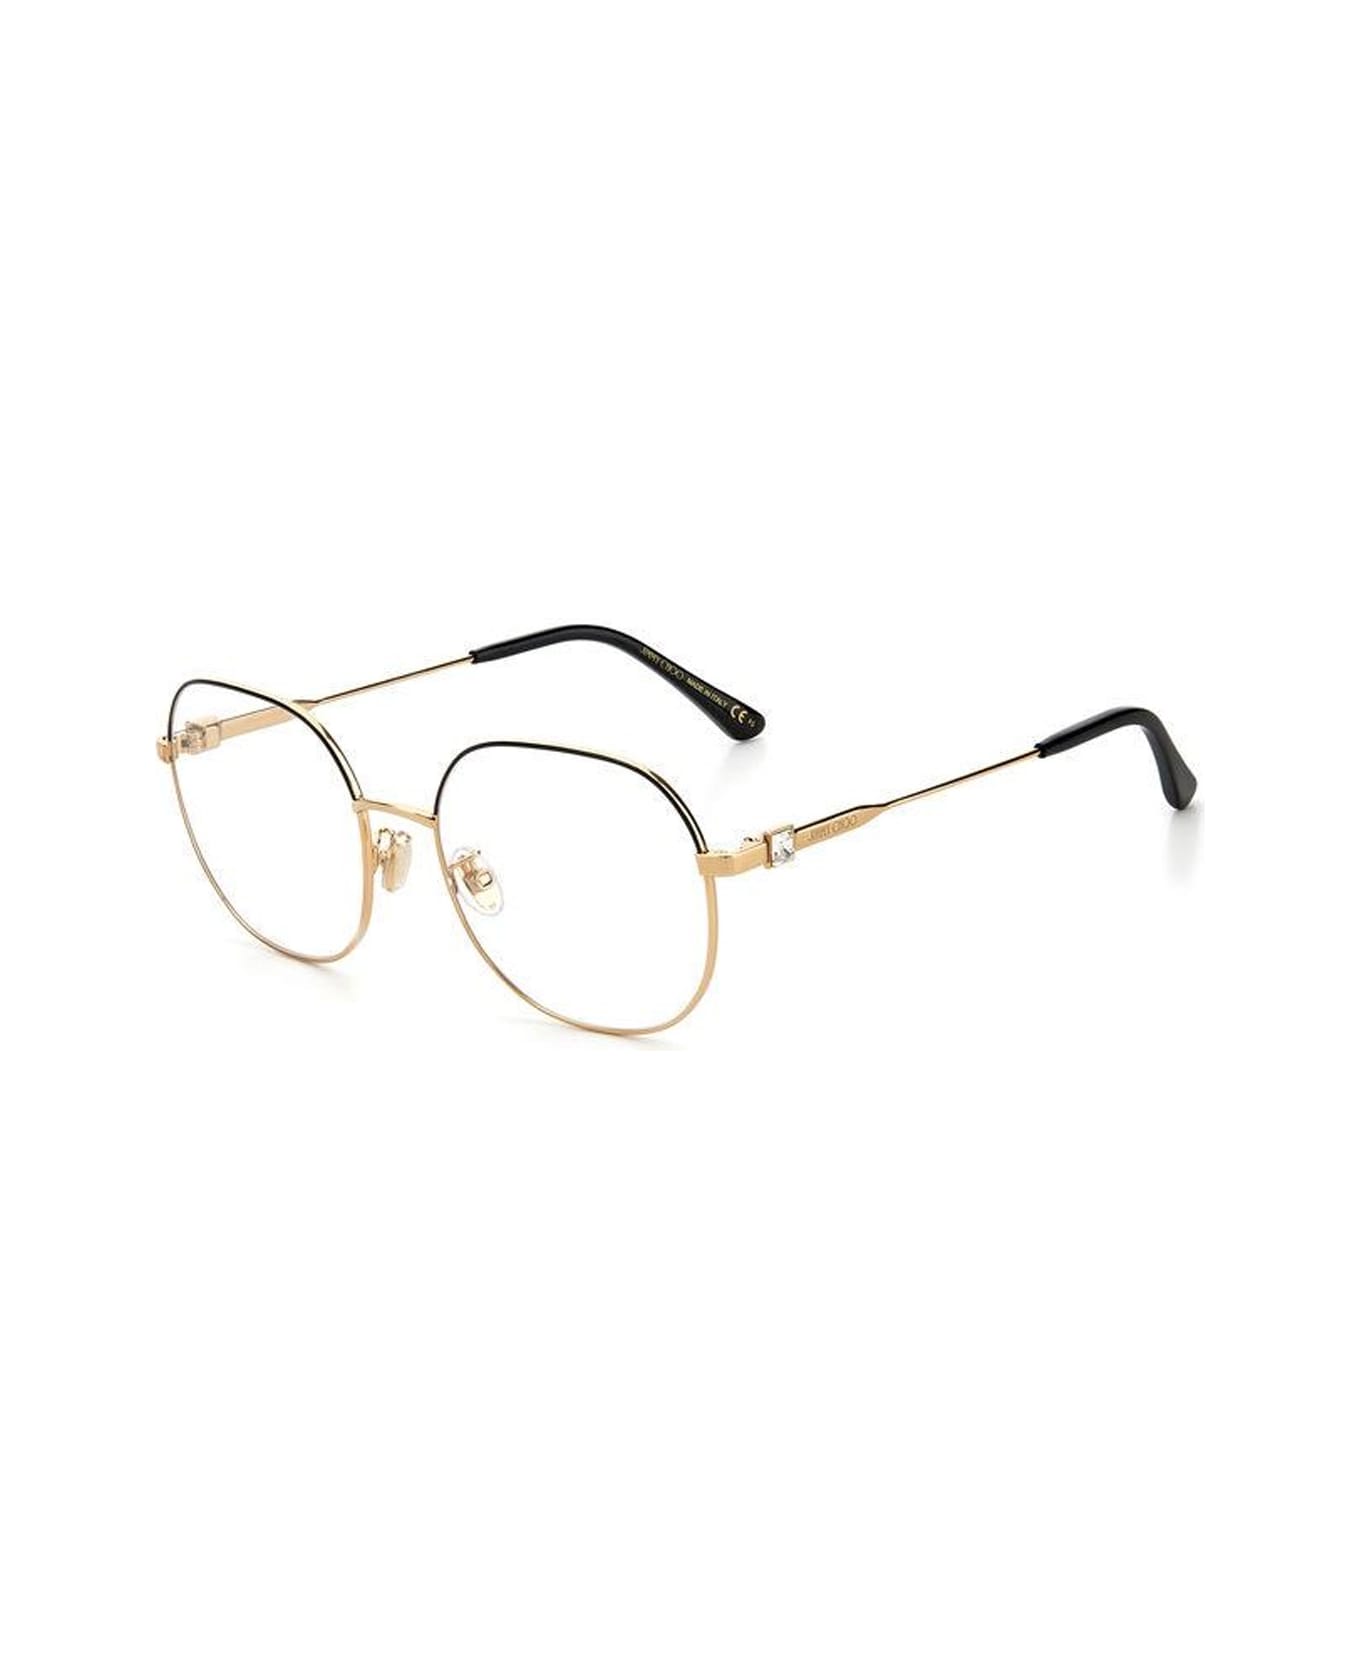 Jimmy Choo Eyewear Jc305/g Glasses - Oro アイウェア